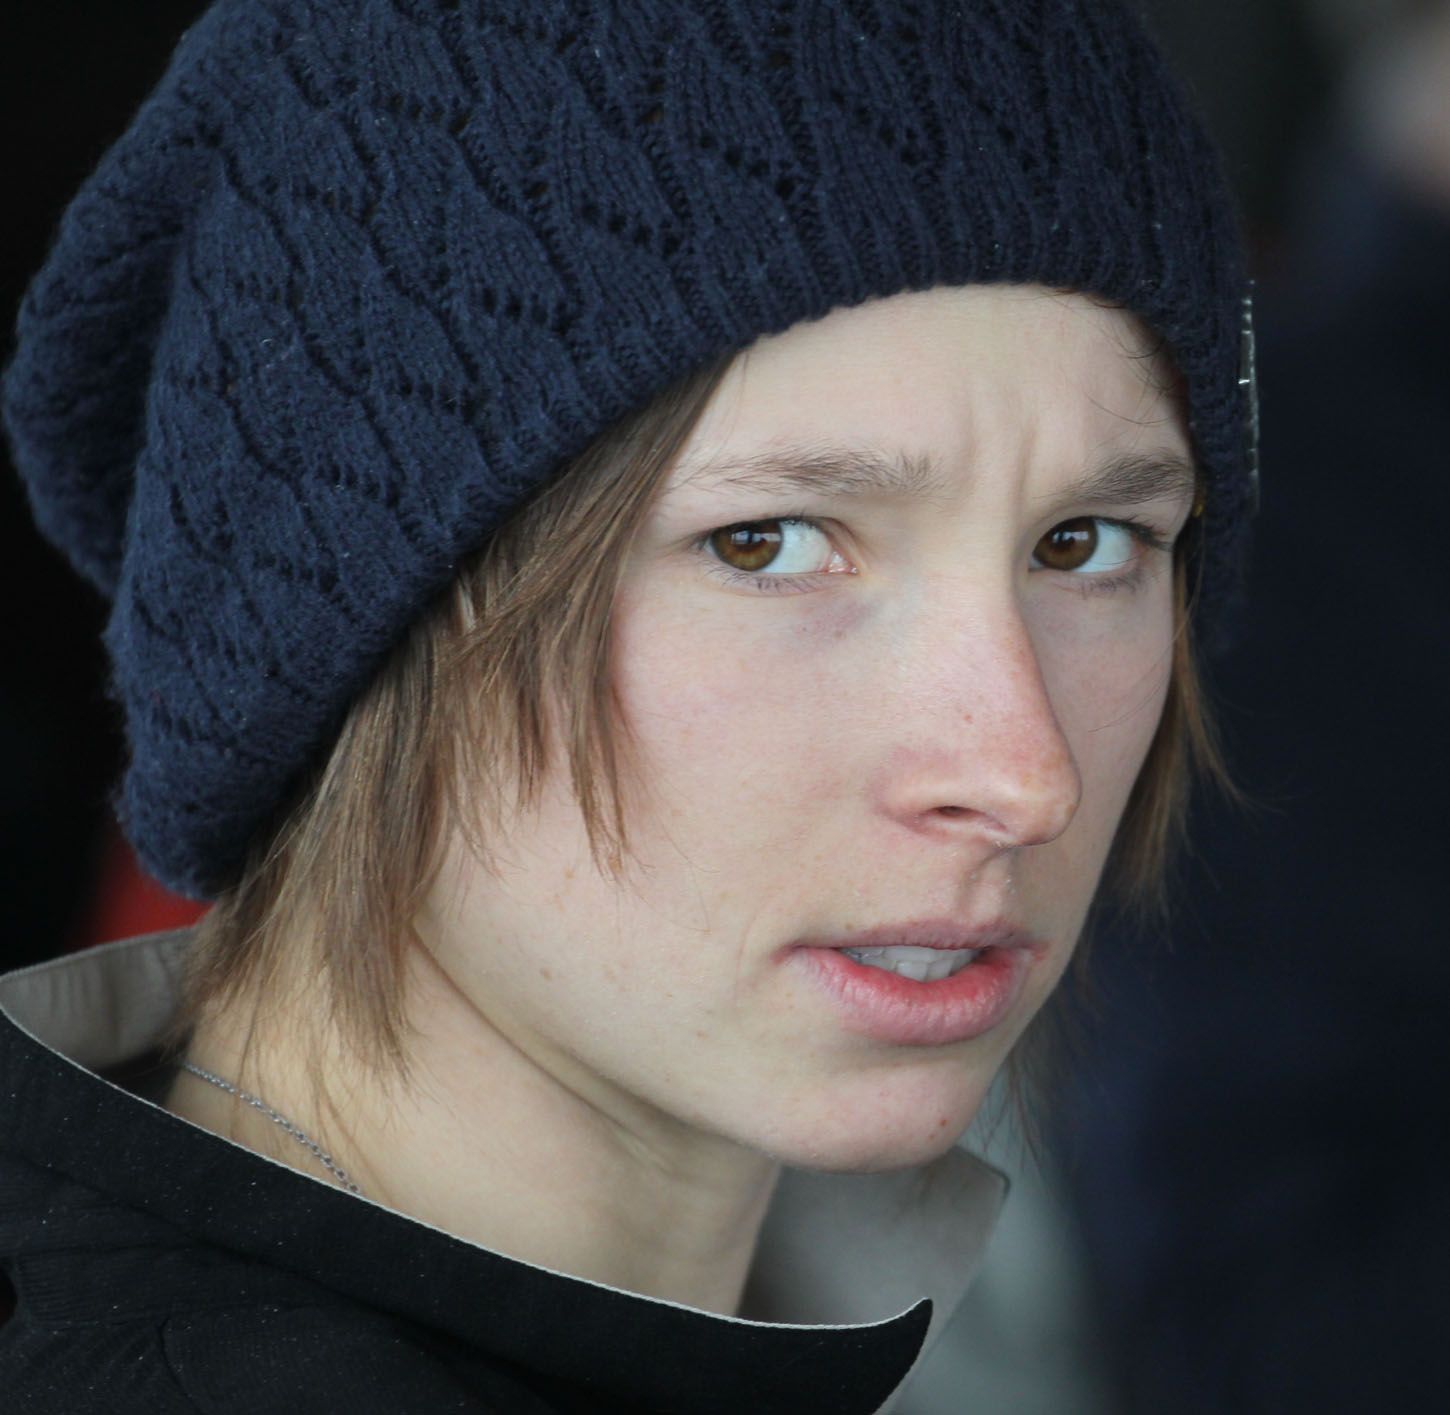 Snowboardistka Šárka Pančochová